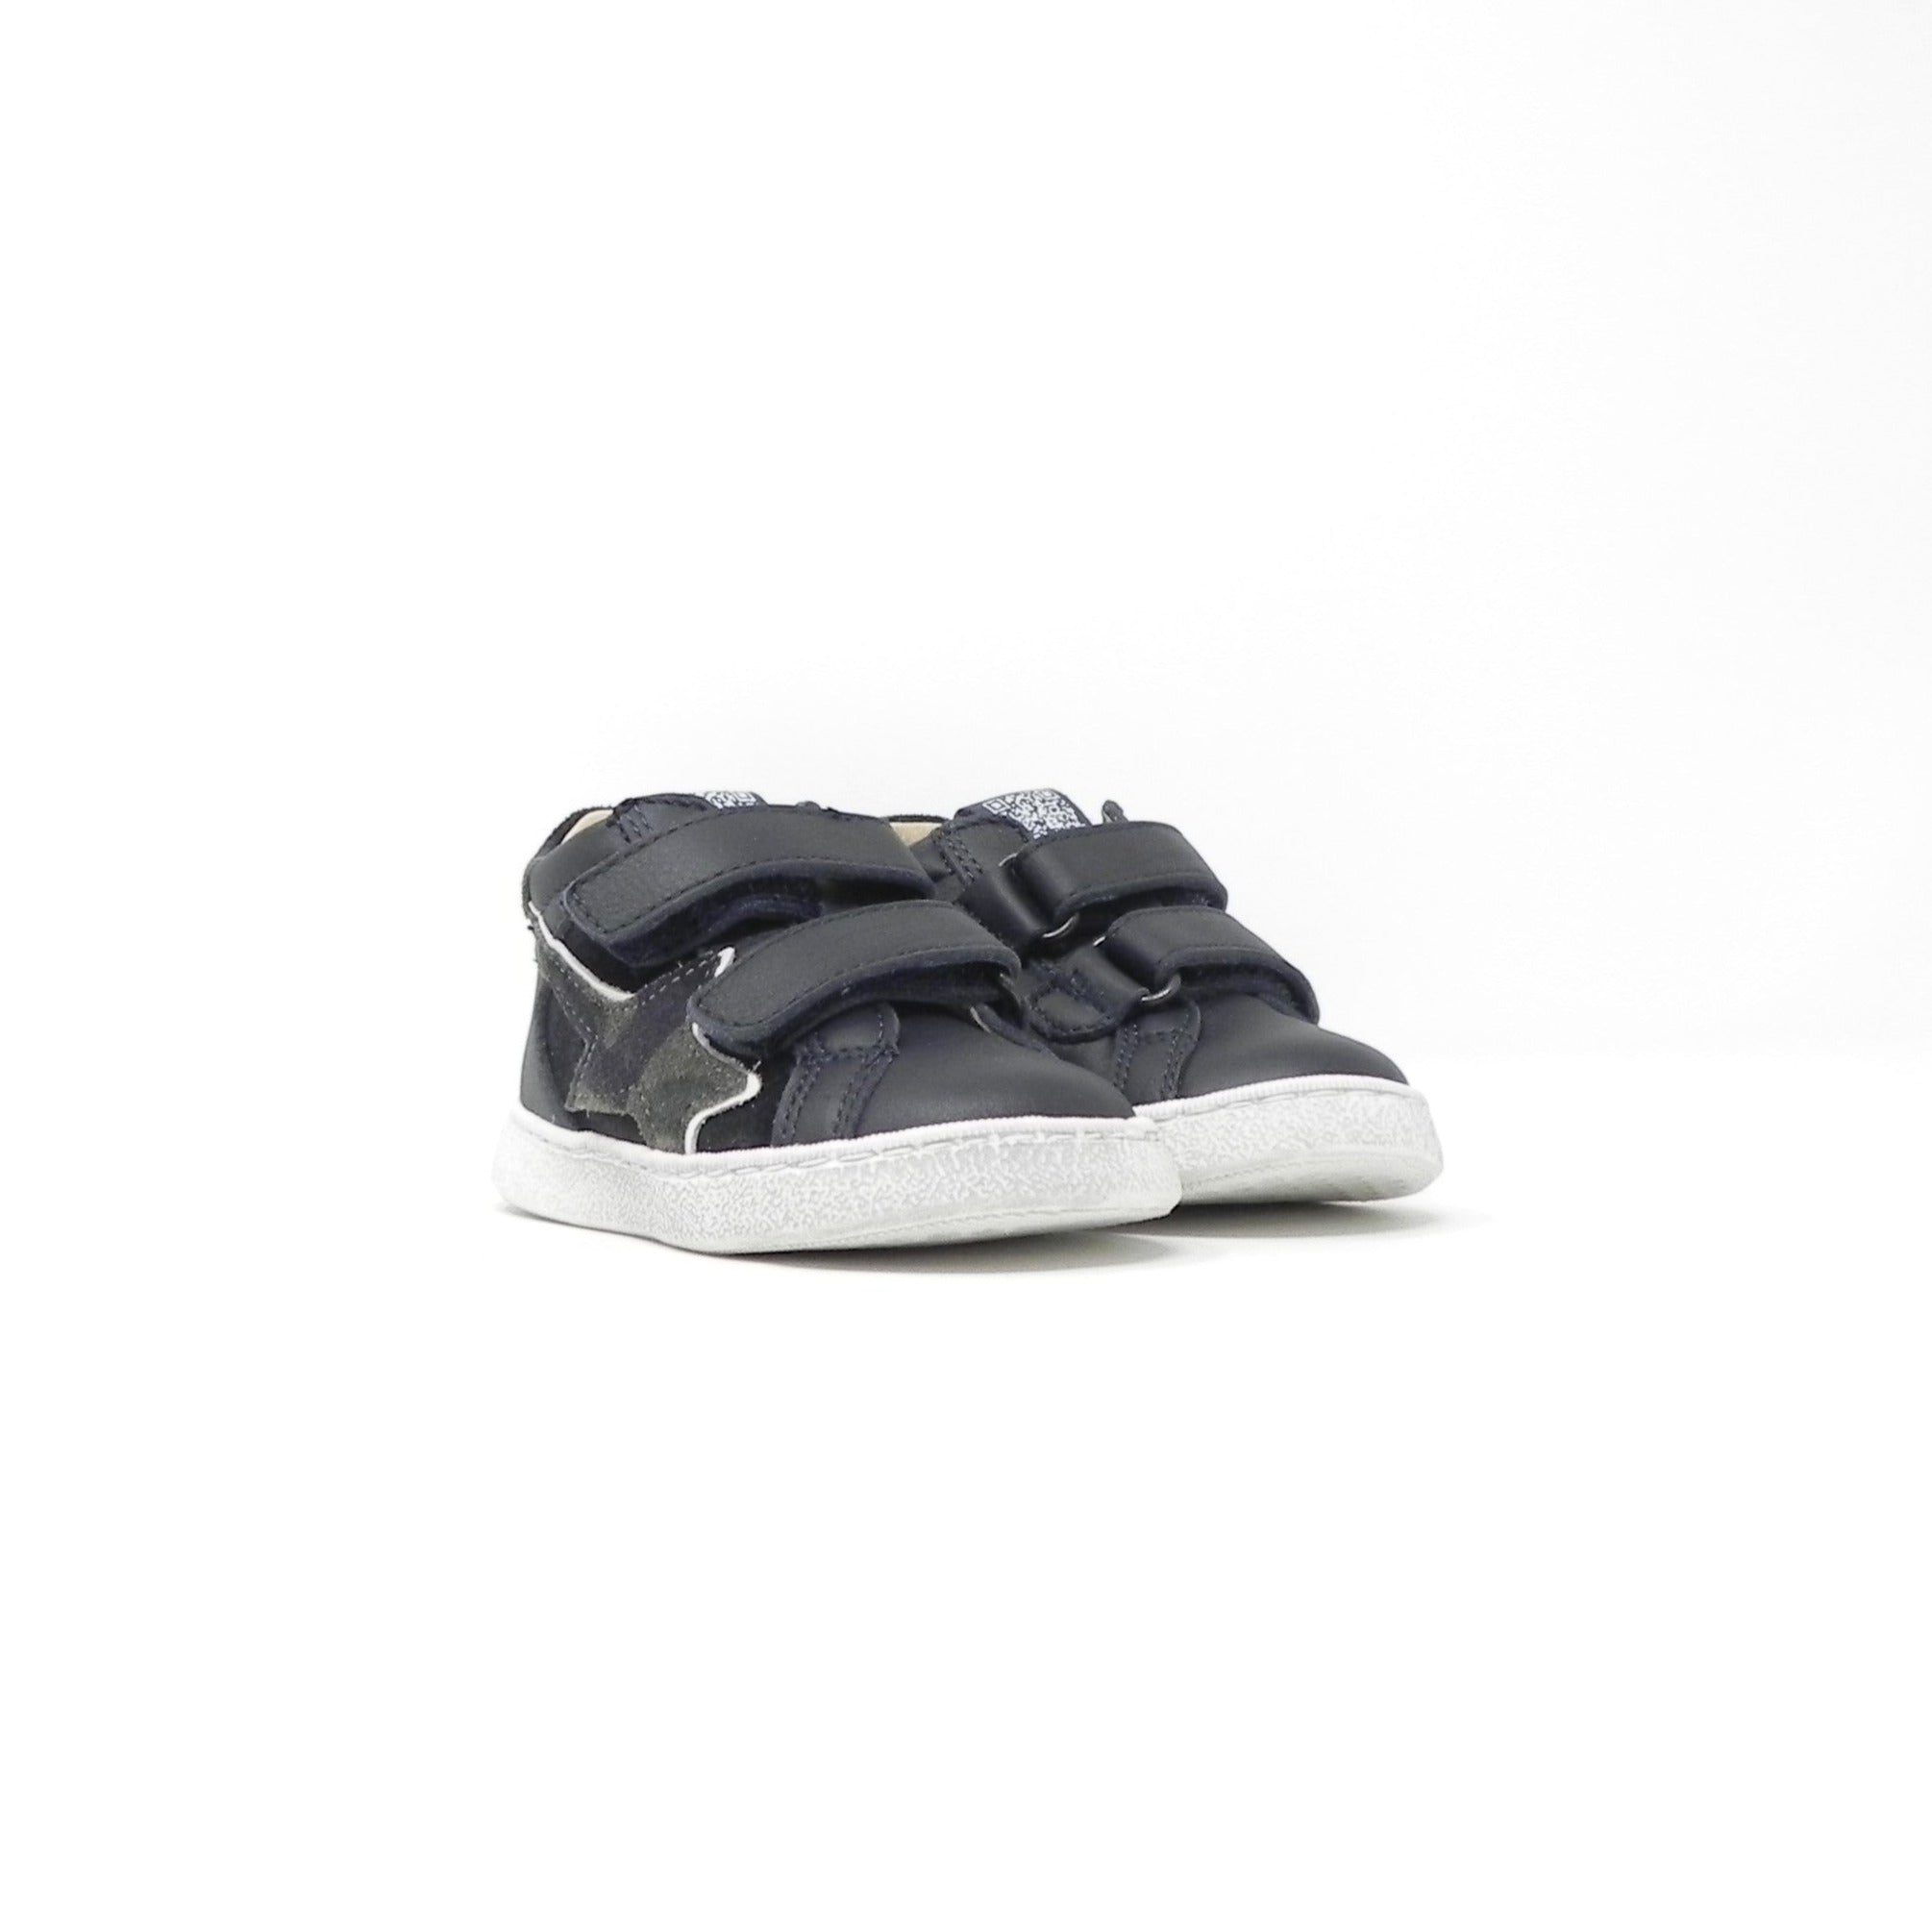 CIAO BIMBI SHOES - Sneakers